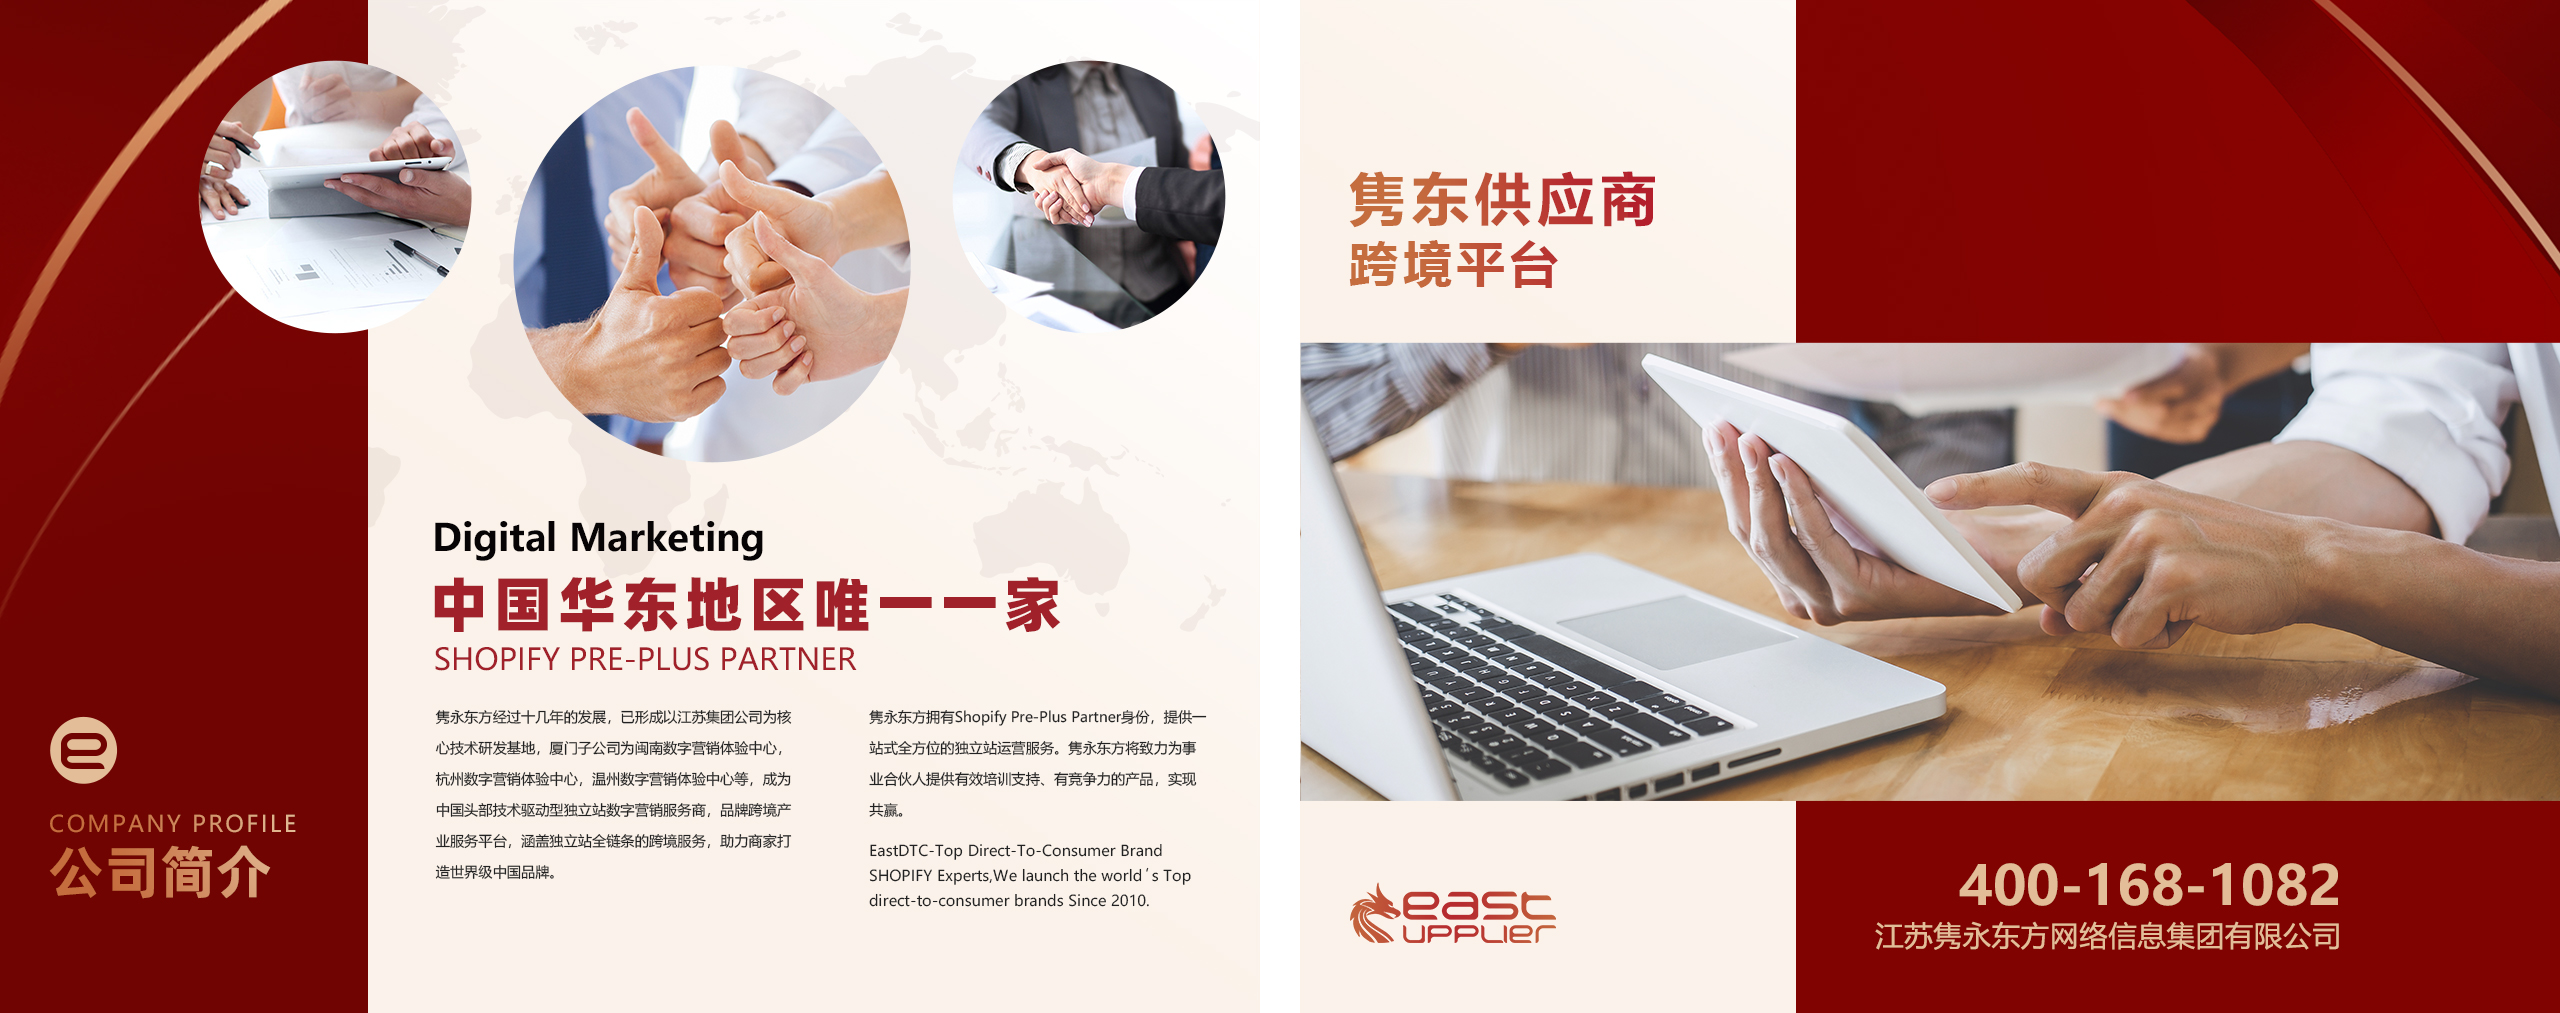 上海嘉定育迅投资管理有限公司网站正式通过验收上线